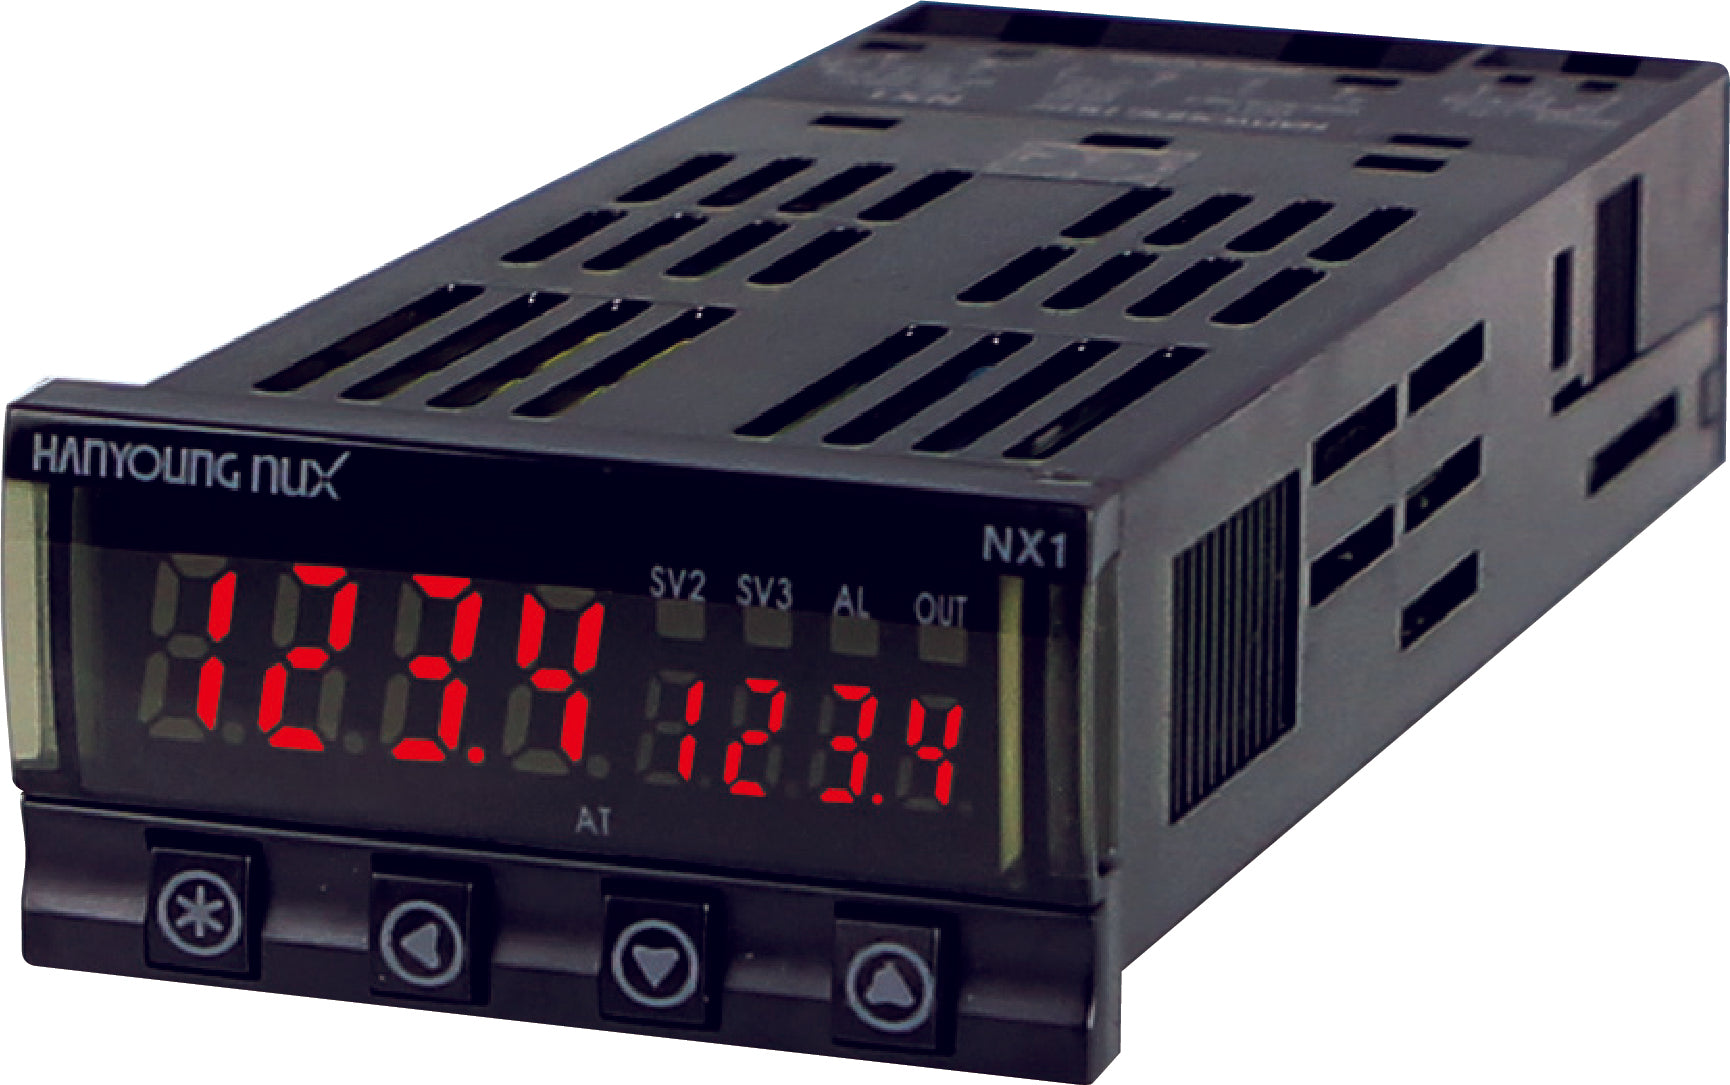 BK3-K, Indicator, 48x24mm, 100-240VAC, Type K Input, 0-1300 Deg C Display Range